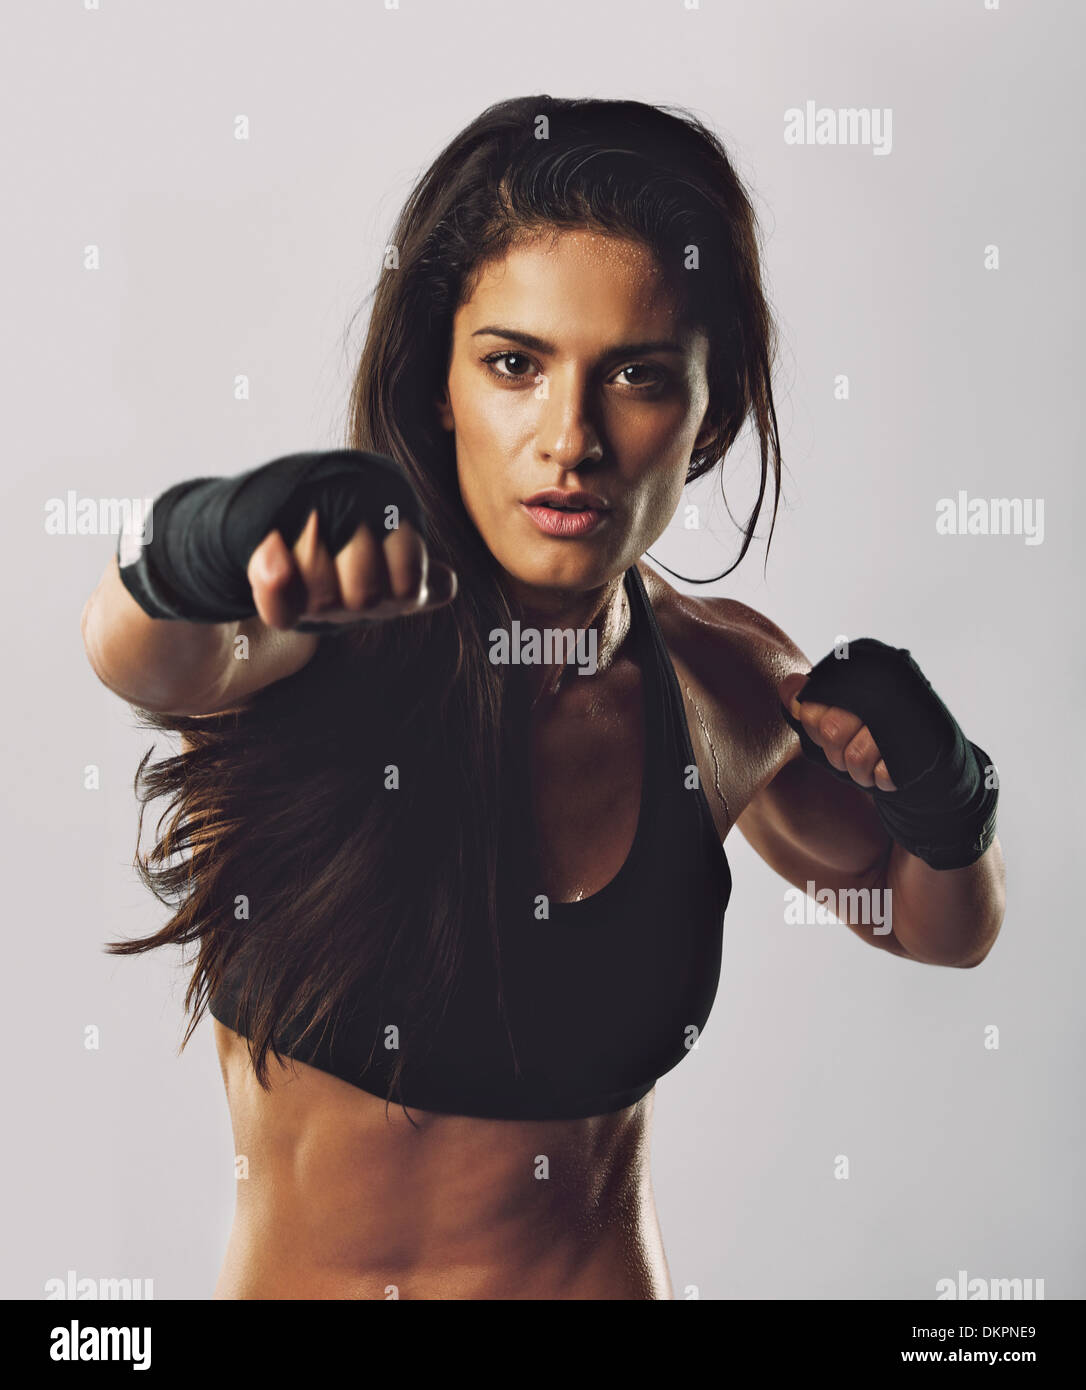 Portrait de jeune fille sport boxe formation contre l'arrière-plan gris. Portrait de la pratique de la boxe. Banque D'Images